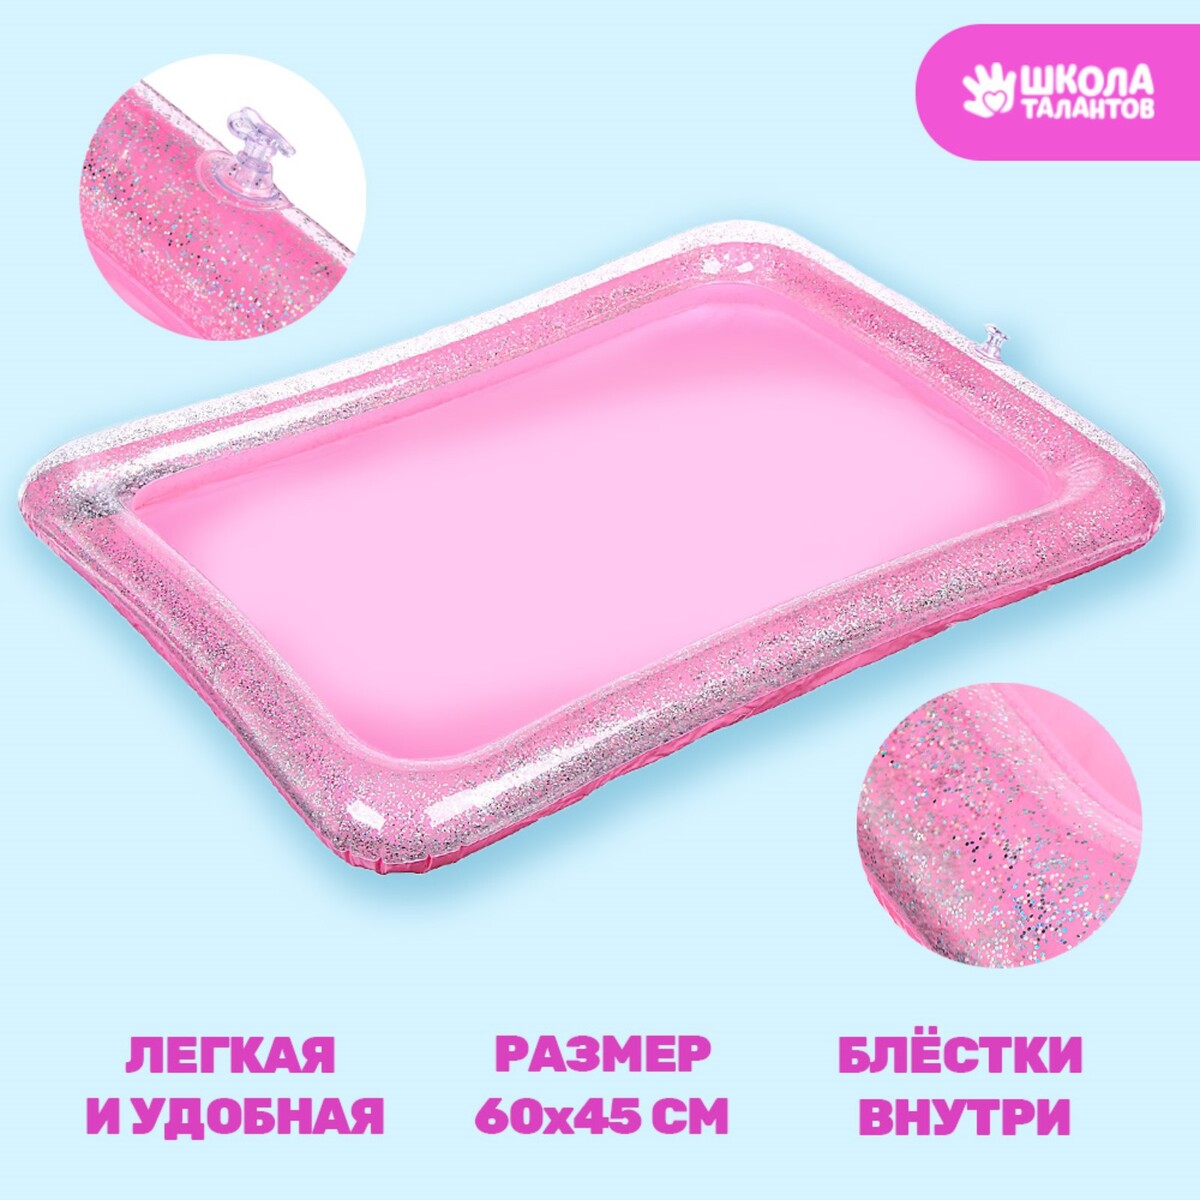 Надувная песочница с блестками, 60х45 см, цвет розовый надувная песочница с блестками 60х45 см ярко розовый